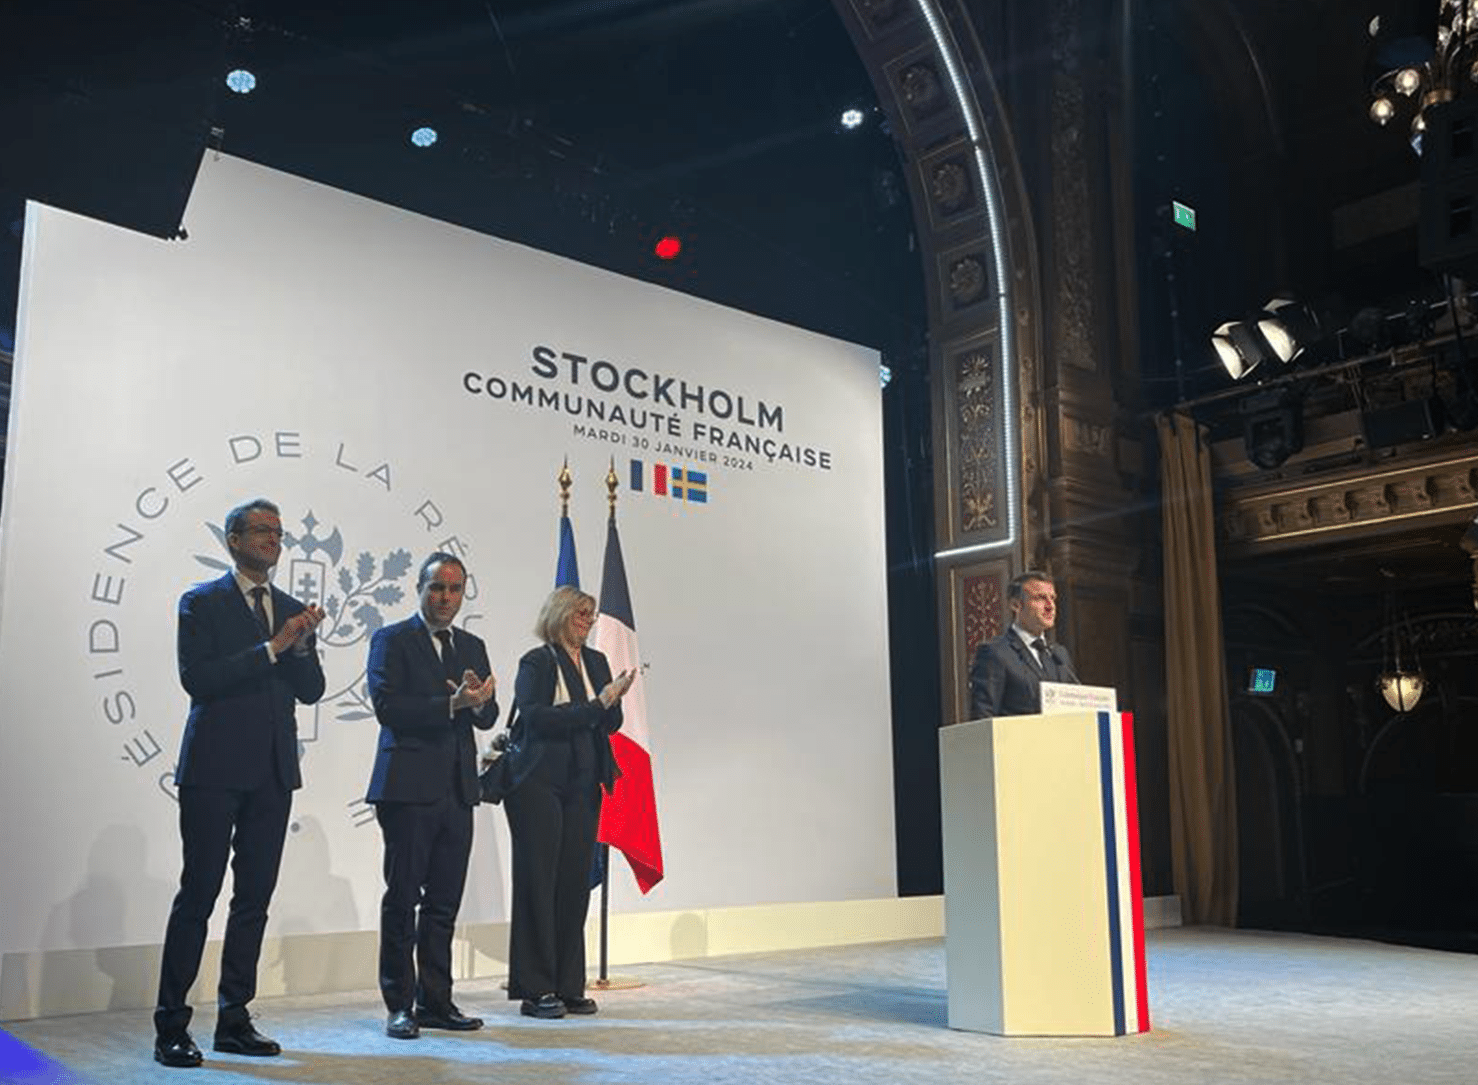 Emmanuel Macron in sweden stockholm